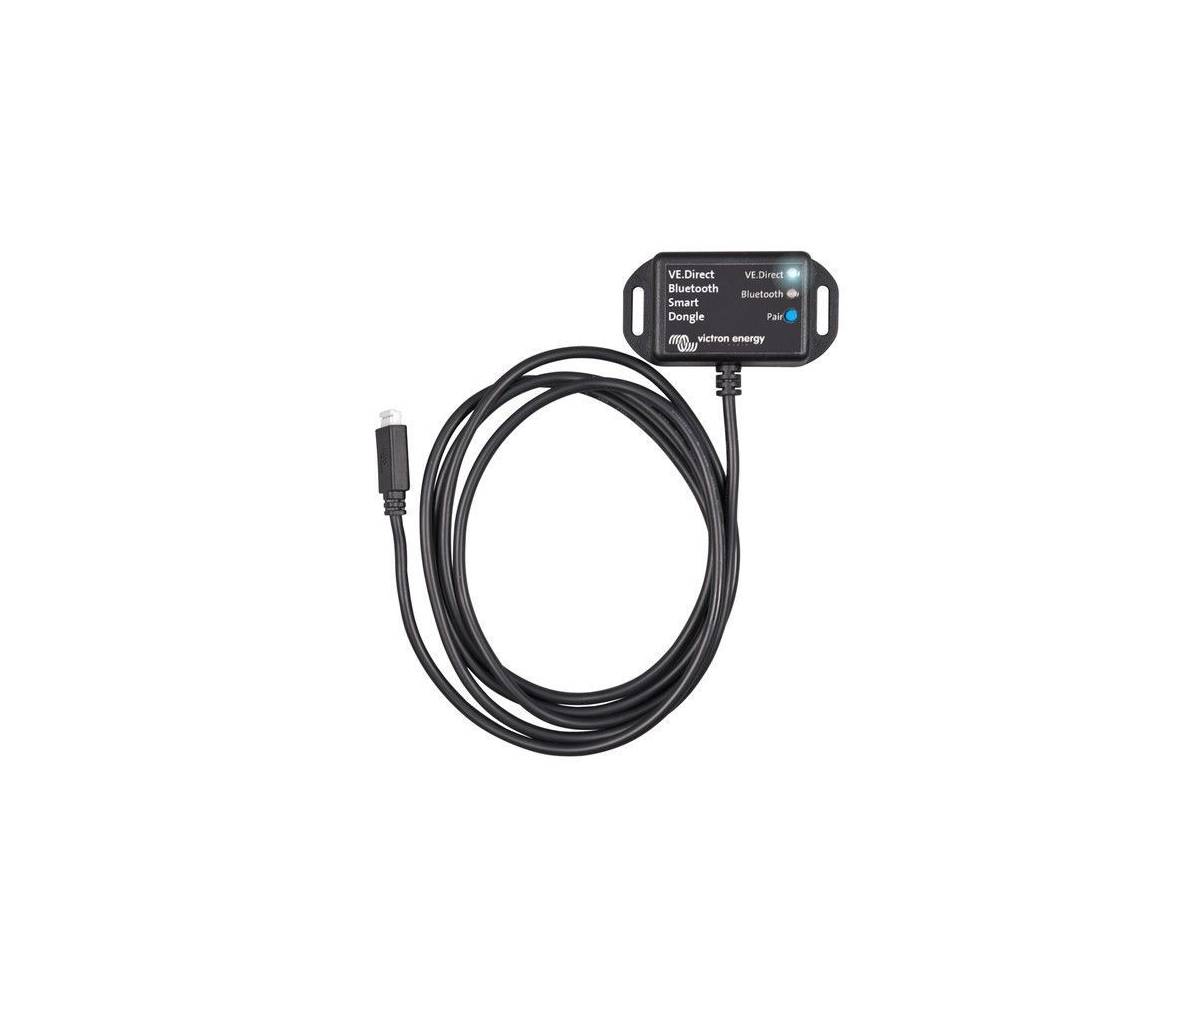 Cable conexión VICTRON VE.Direct a Bluetooth Smart dongle